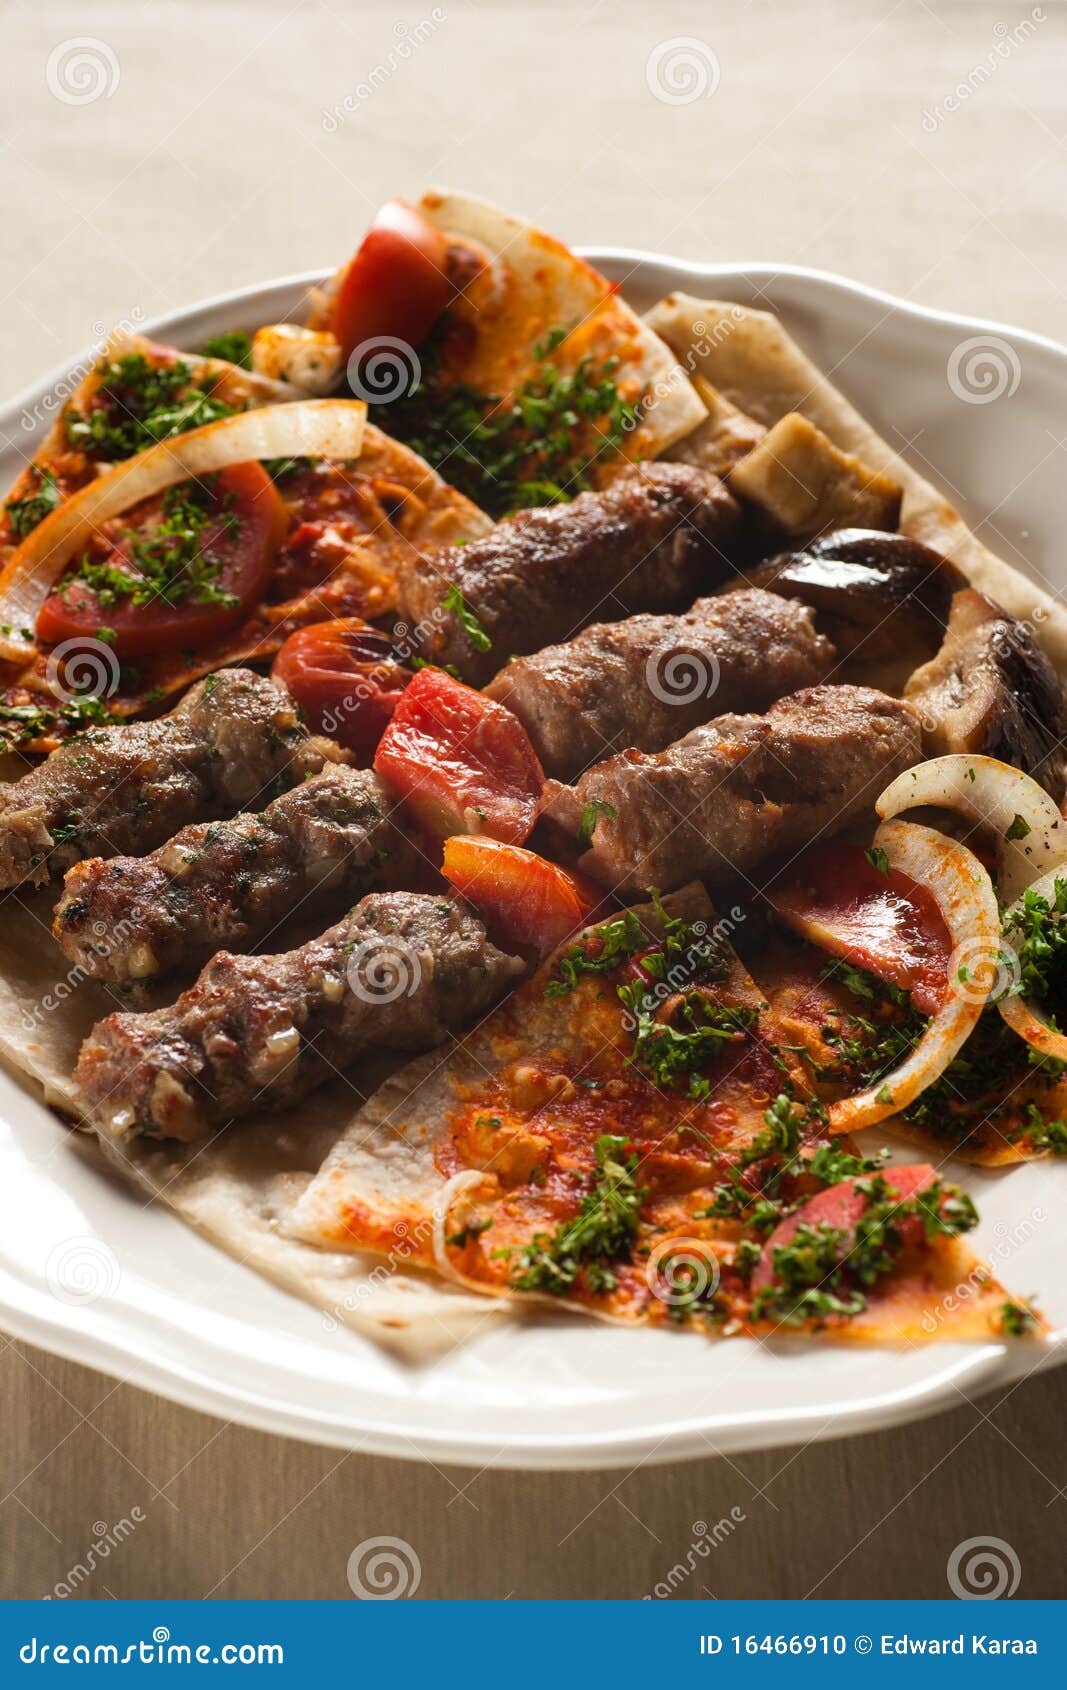 shish kebab, lebanese cuisine.